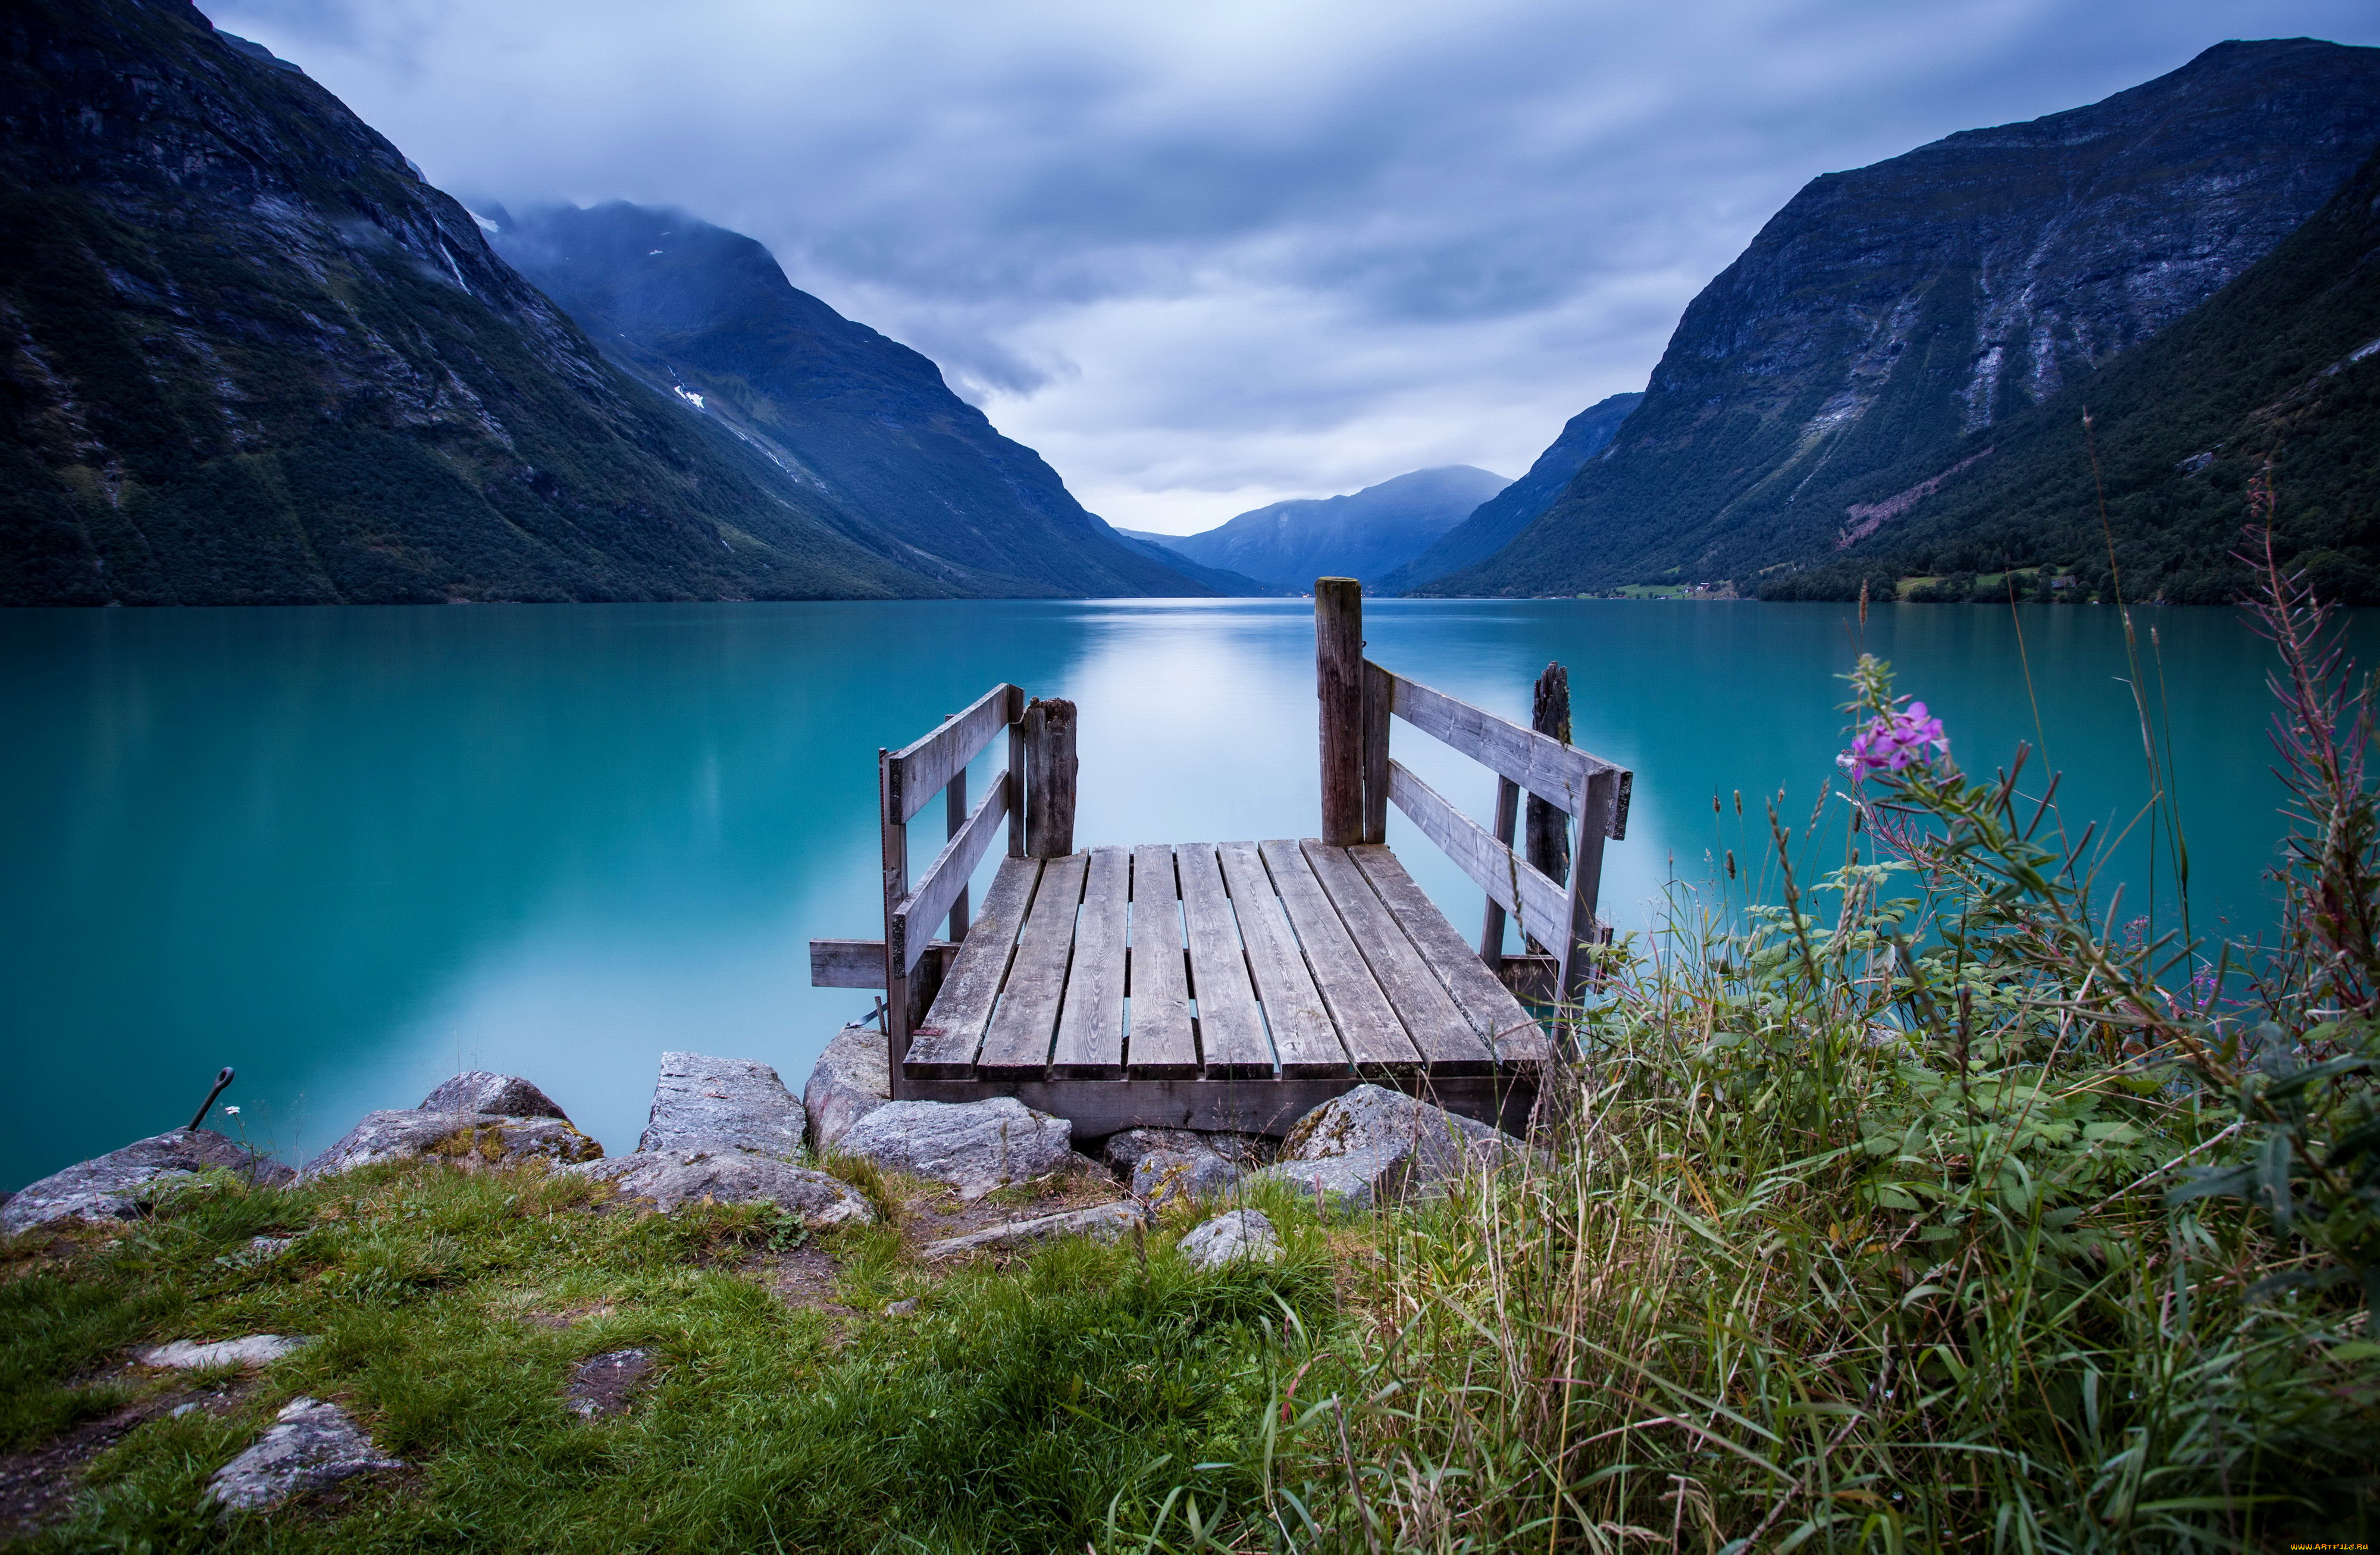 Обои на комп. Озеро МЬЁСА Норвегия. Лофотенские острова, Норвегия. Гейрангер-Фьорд Норвегия. Телецкое озеро.